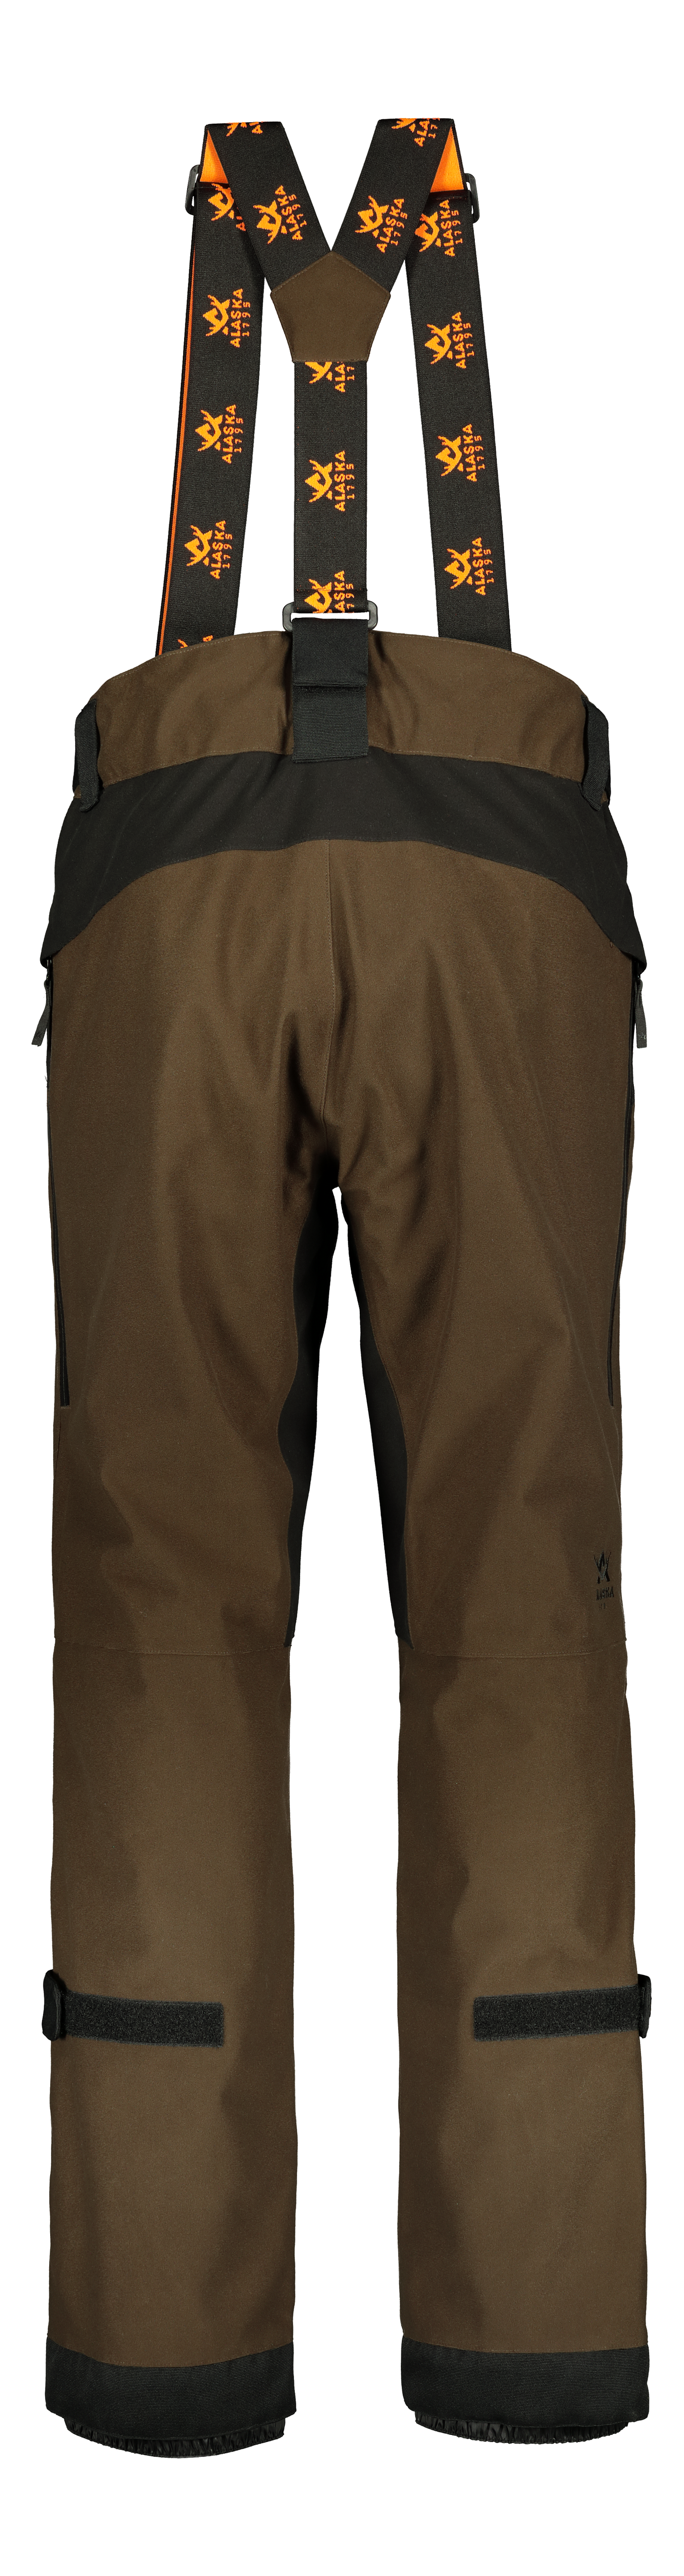 Predator Men's Trousers, Brown/Black